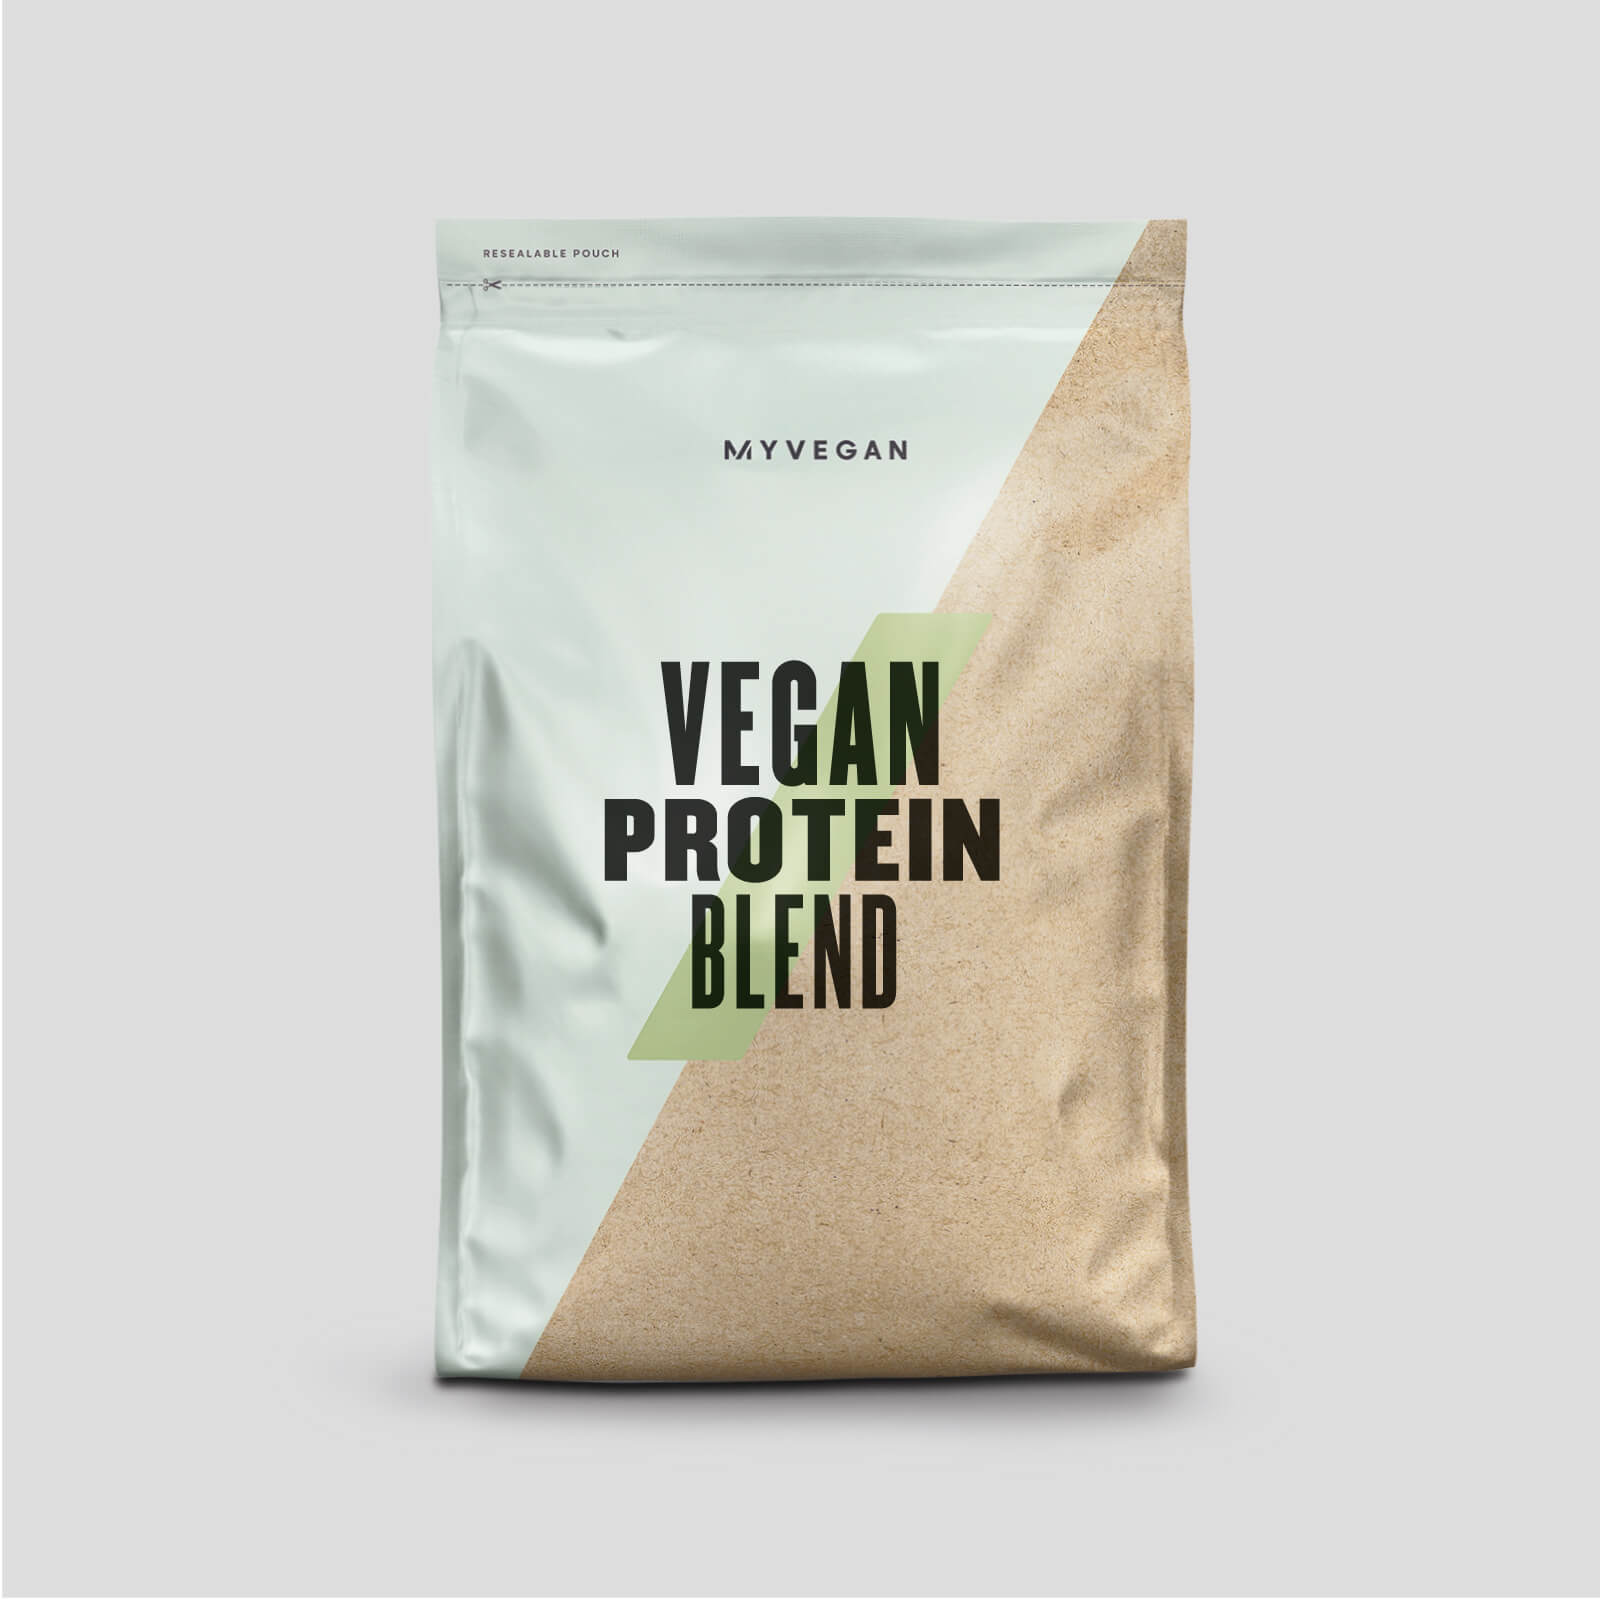 Myvegan Mezcla de Proteína Vegana - 2.5kg - Cafe y Nueces